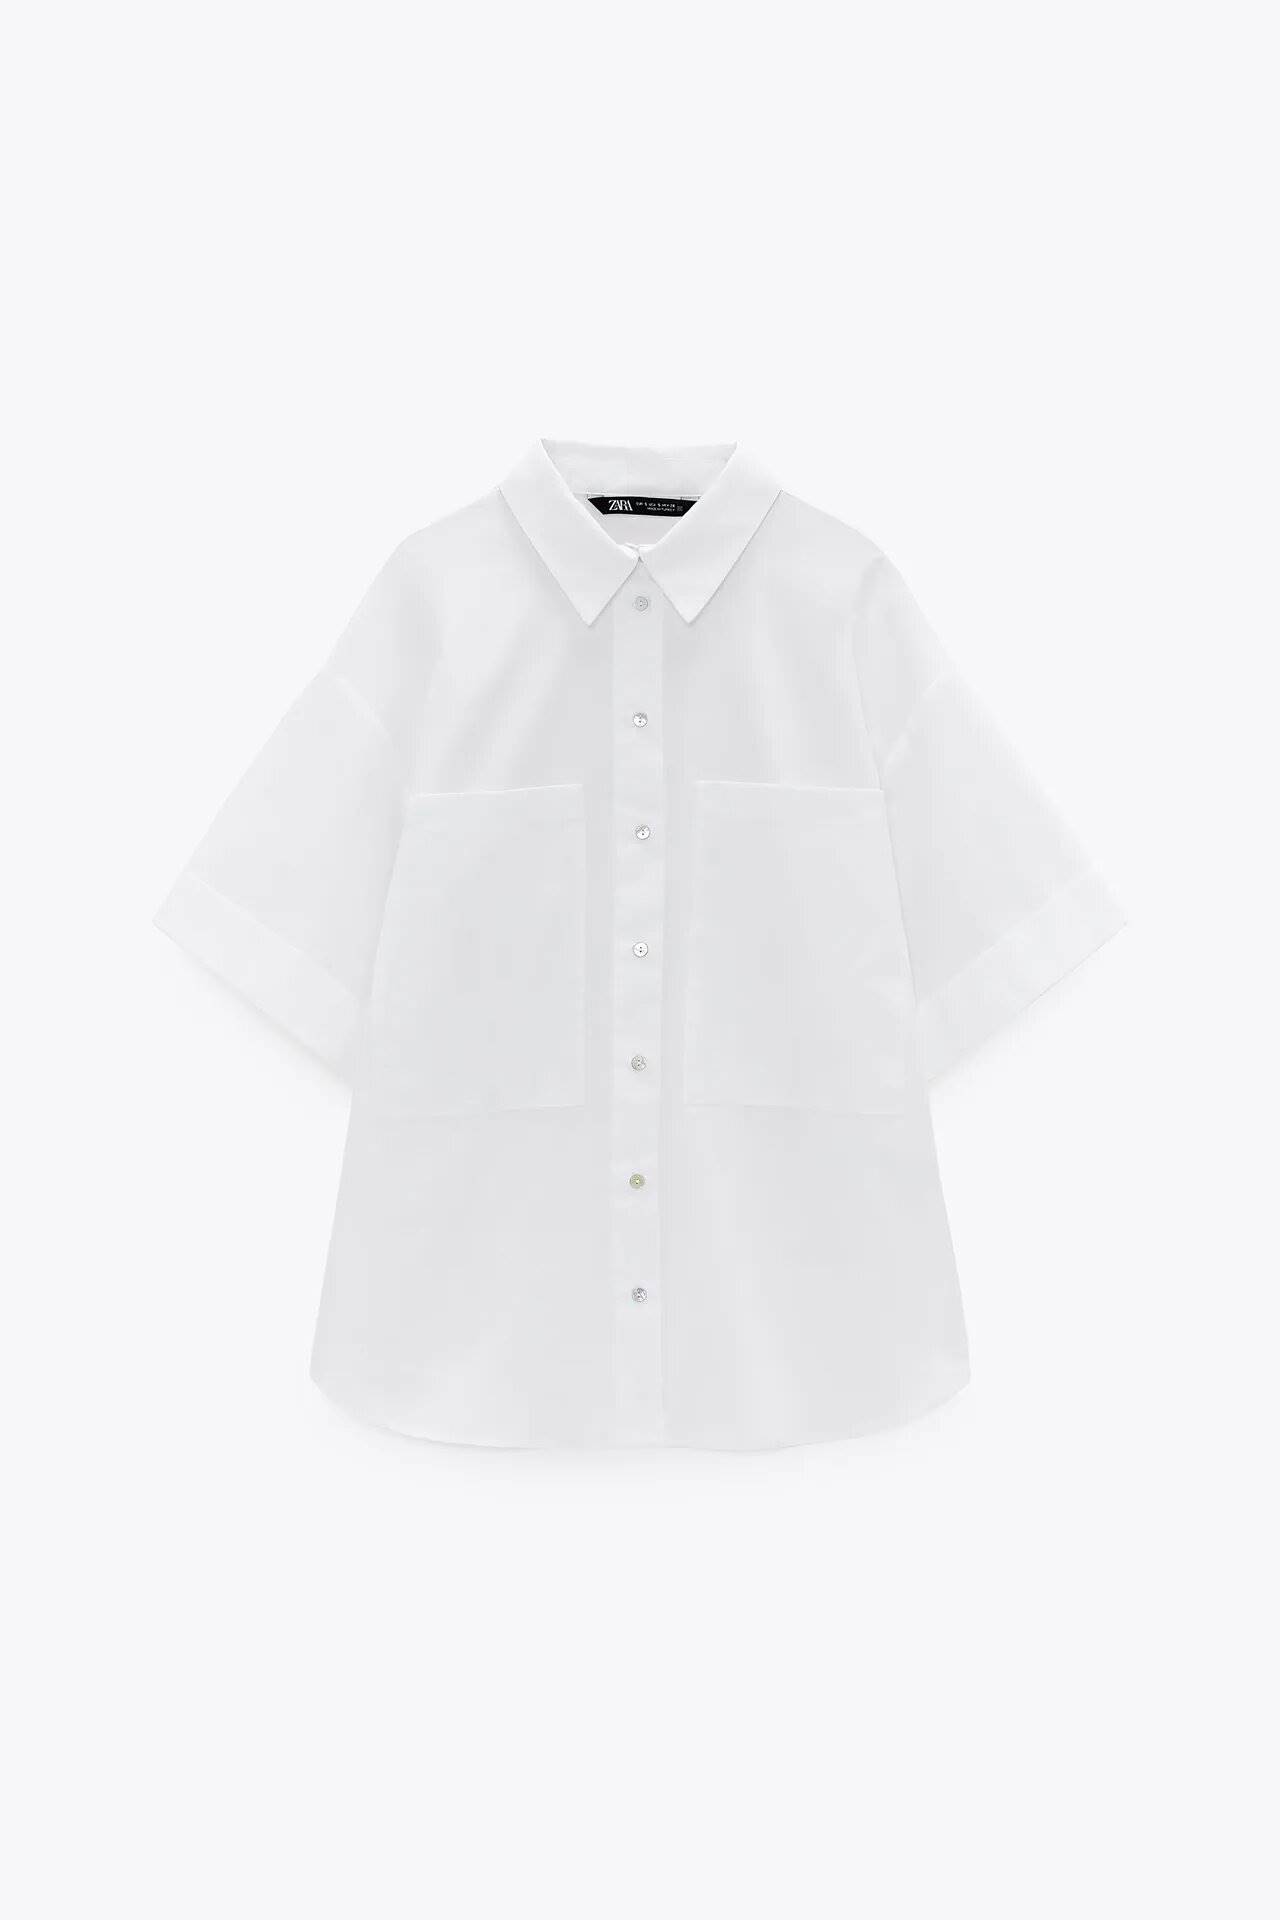 Camisa blanca de popelín